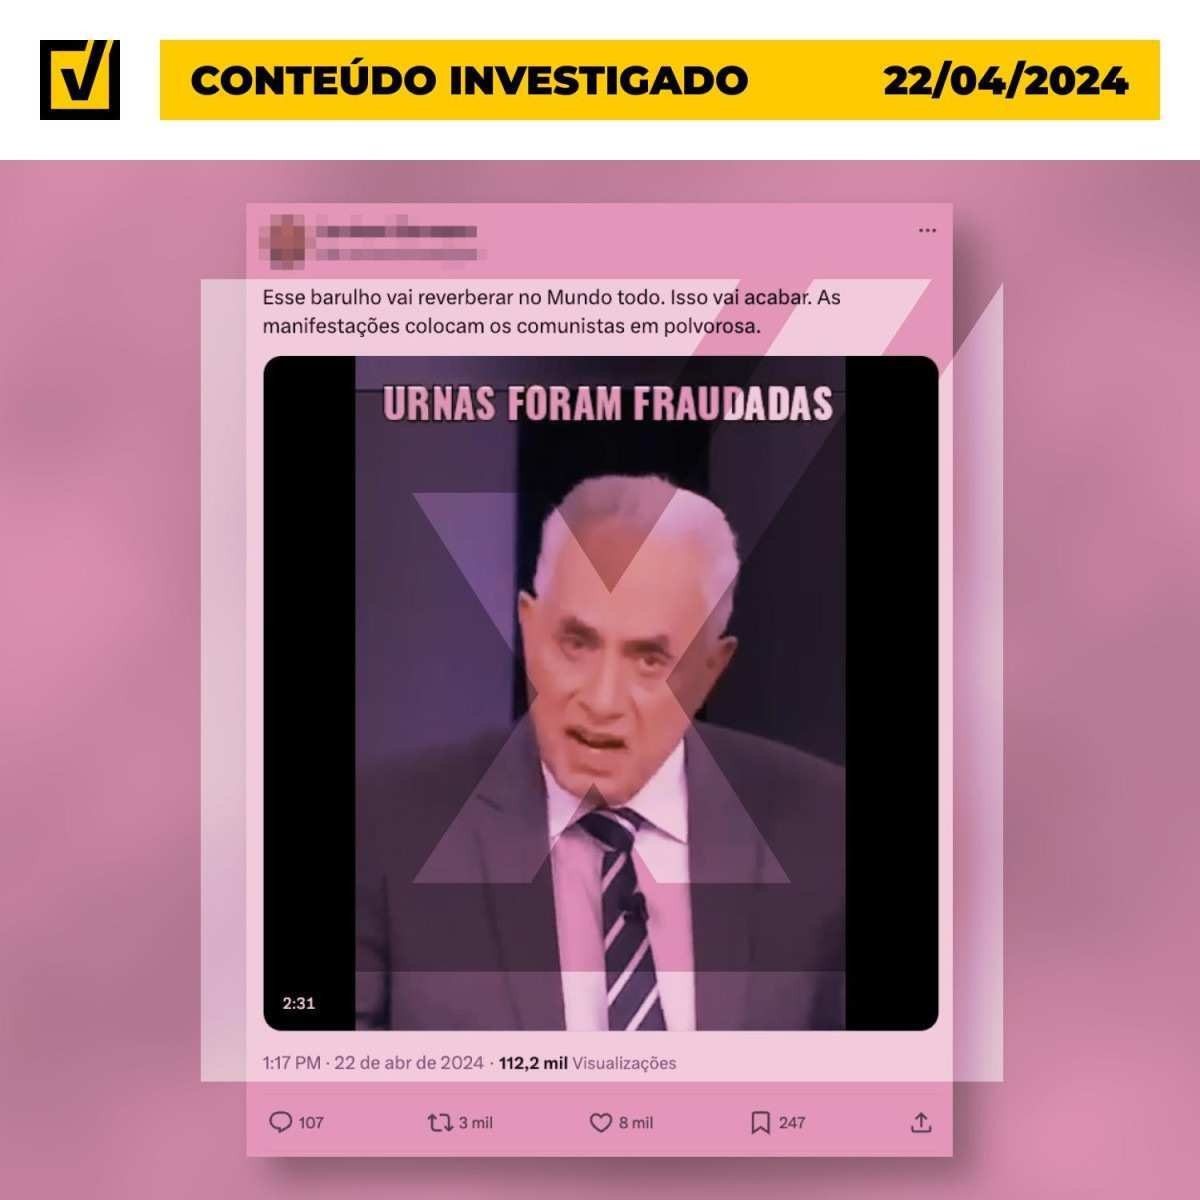 Vídeo descontextualiza e inventa frases para alegar que há pressão internacional contra o governo brasileiro